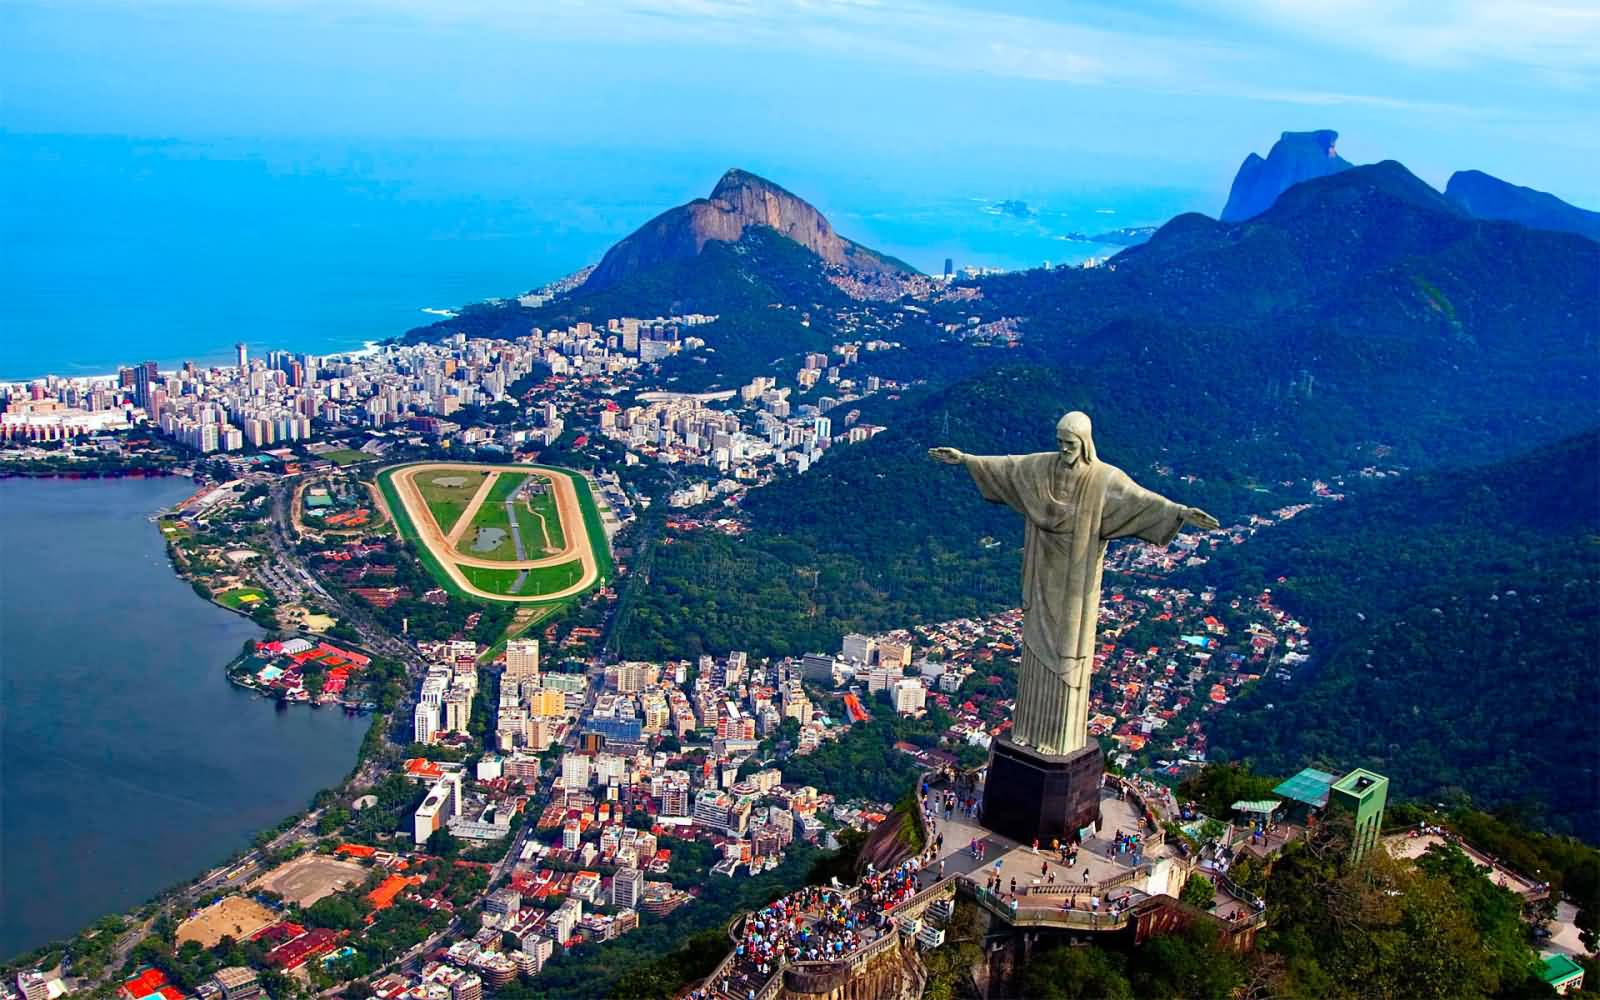 Christ The Redeemer And Rio de Janeiro City View